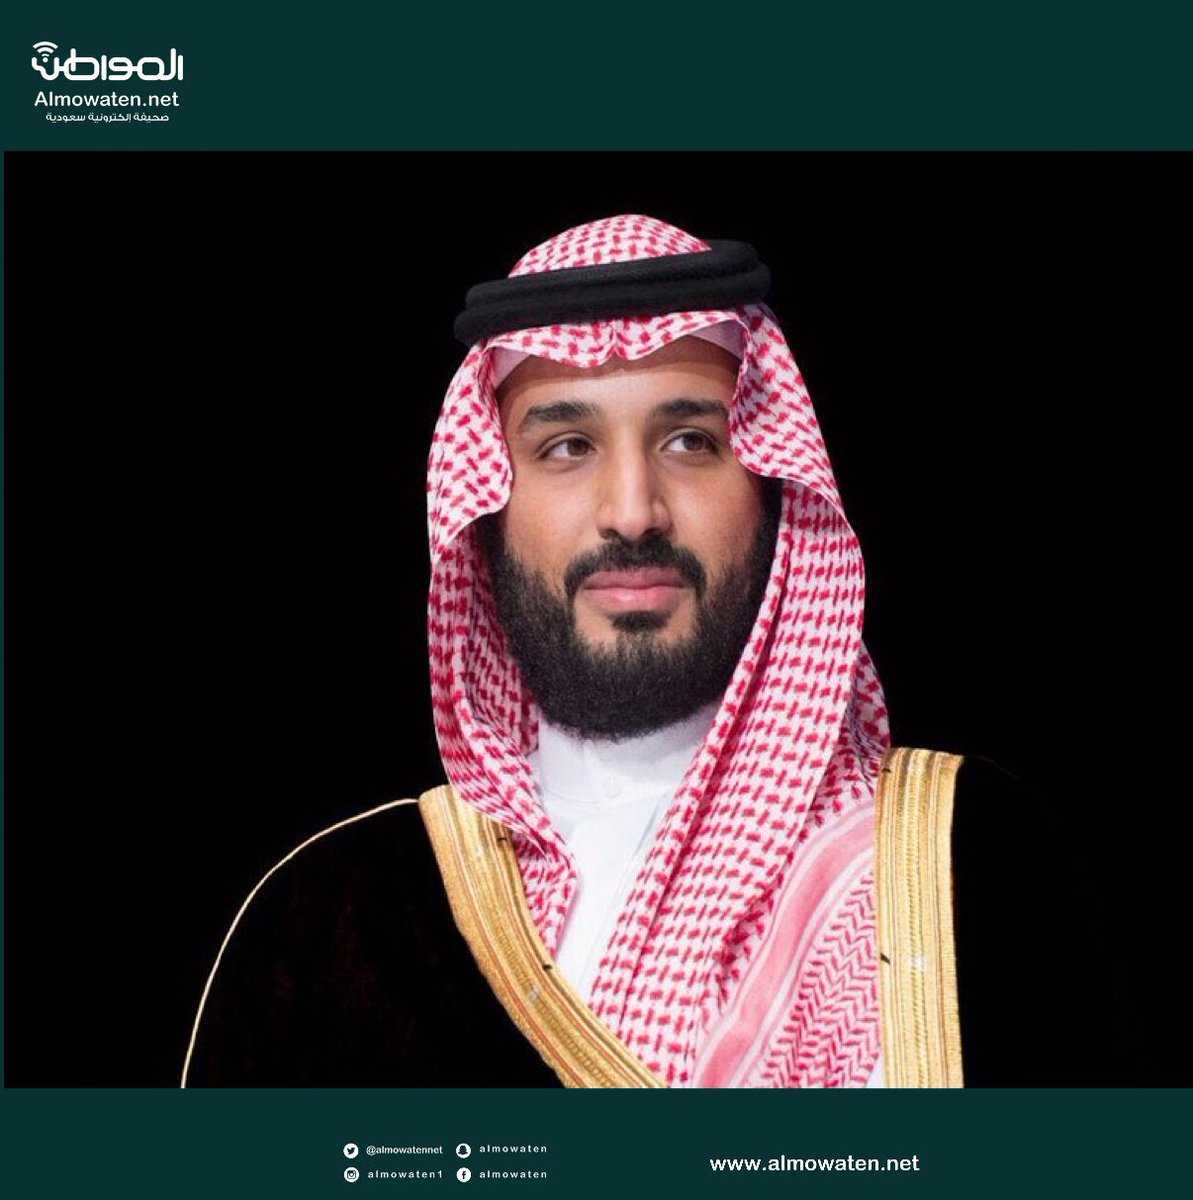 الأمير محمد بن سلمان يدعم ترميم مباني جدة التاريخية بـ 50 مليون ريال